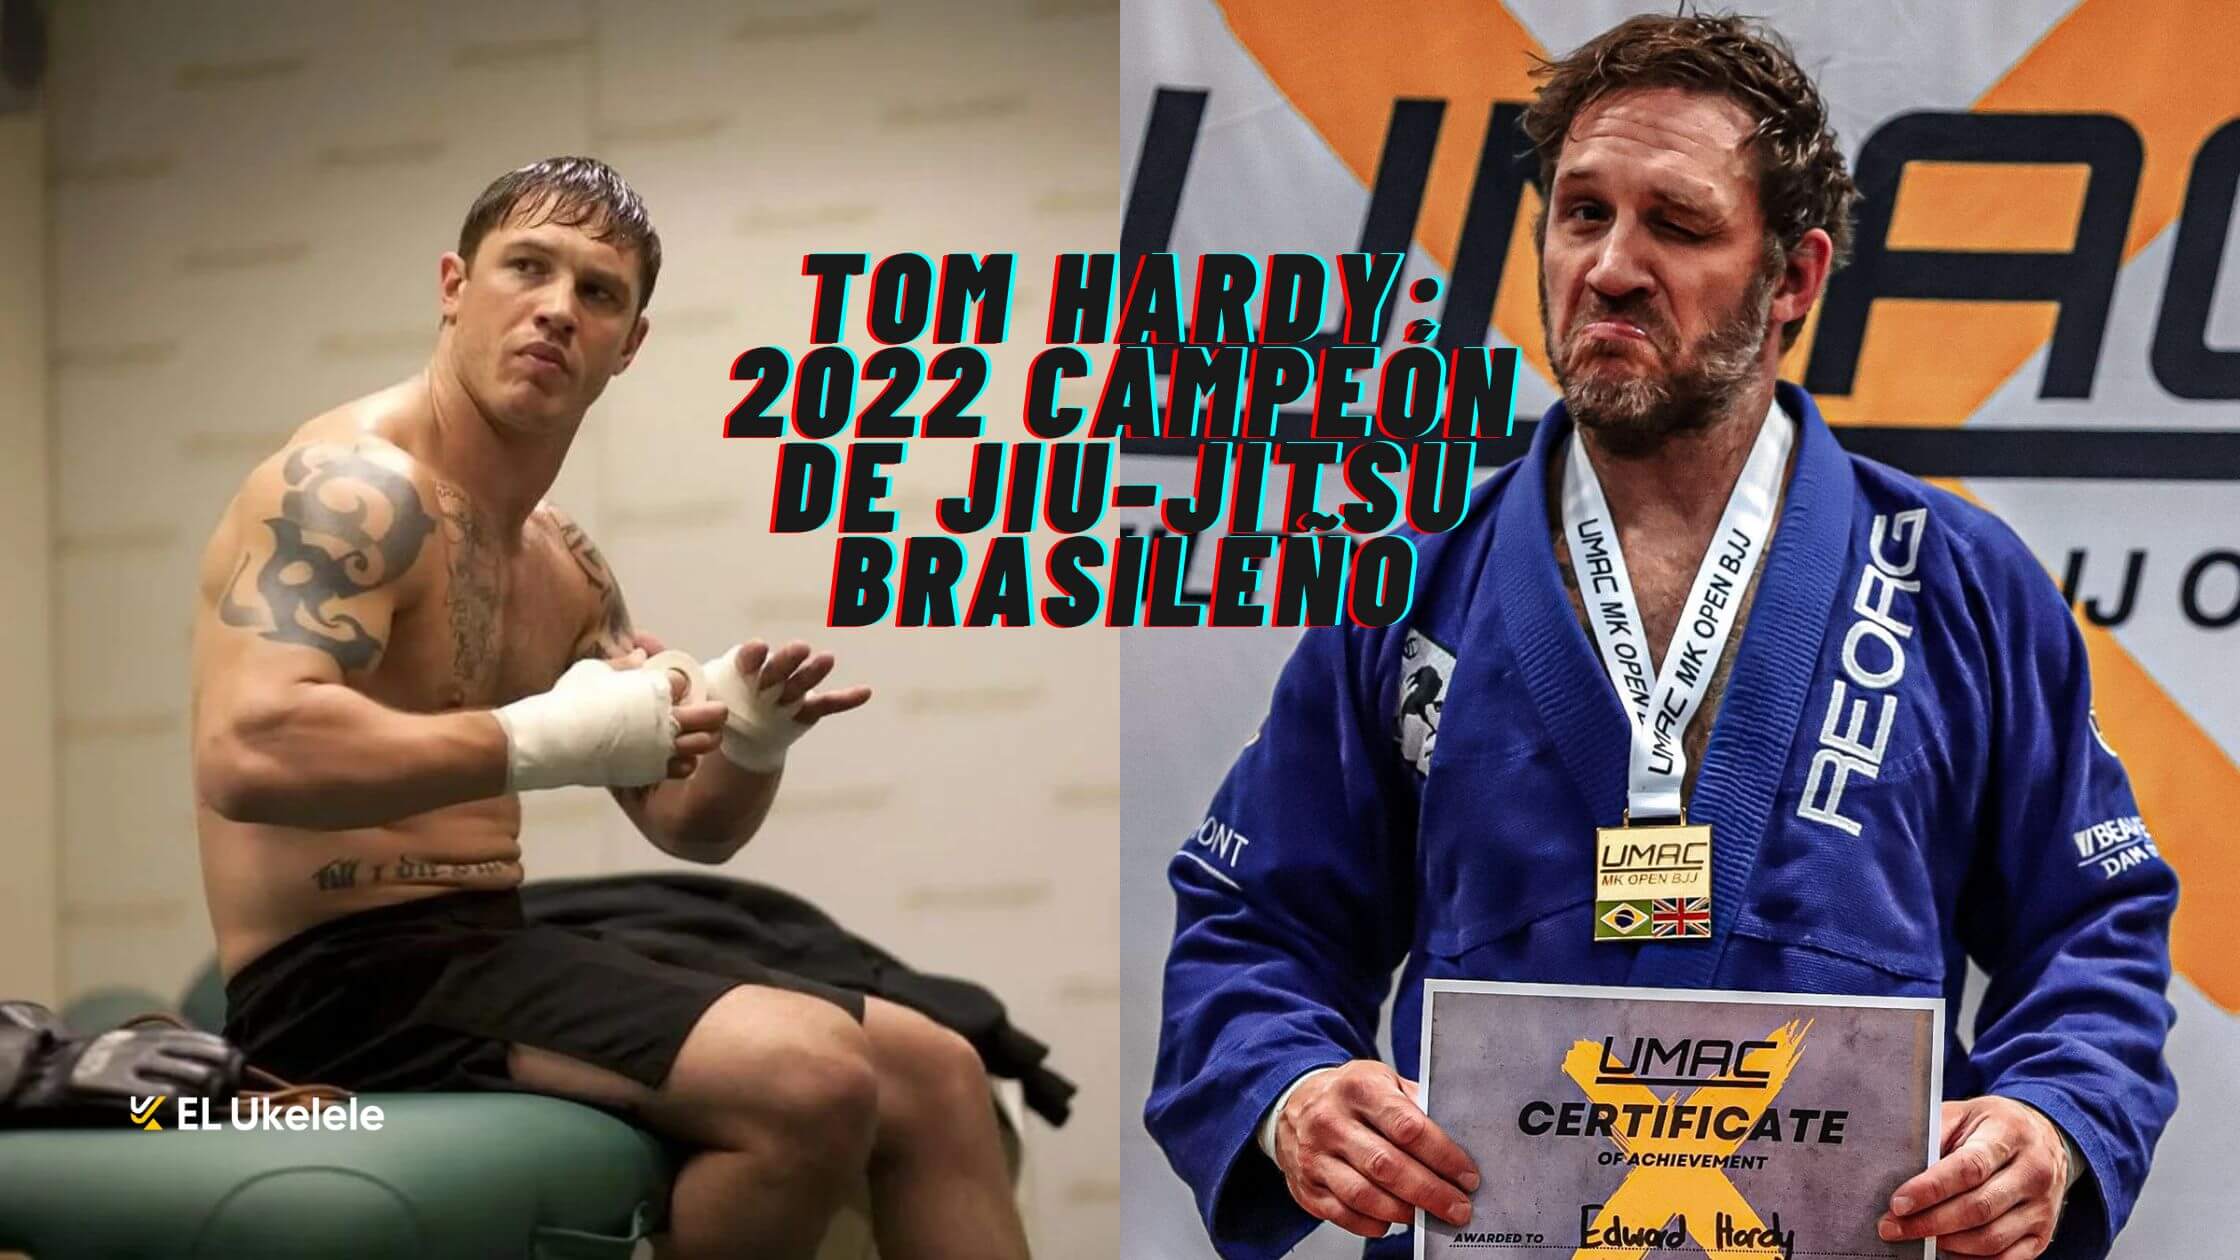 Tom Hardy 2022 campeon de jiu jitsu brasileno 1 1